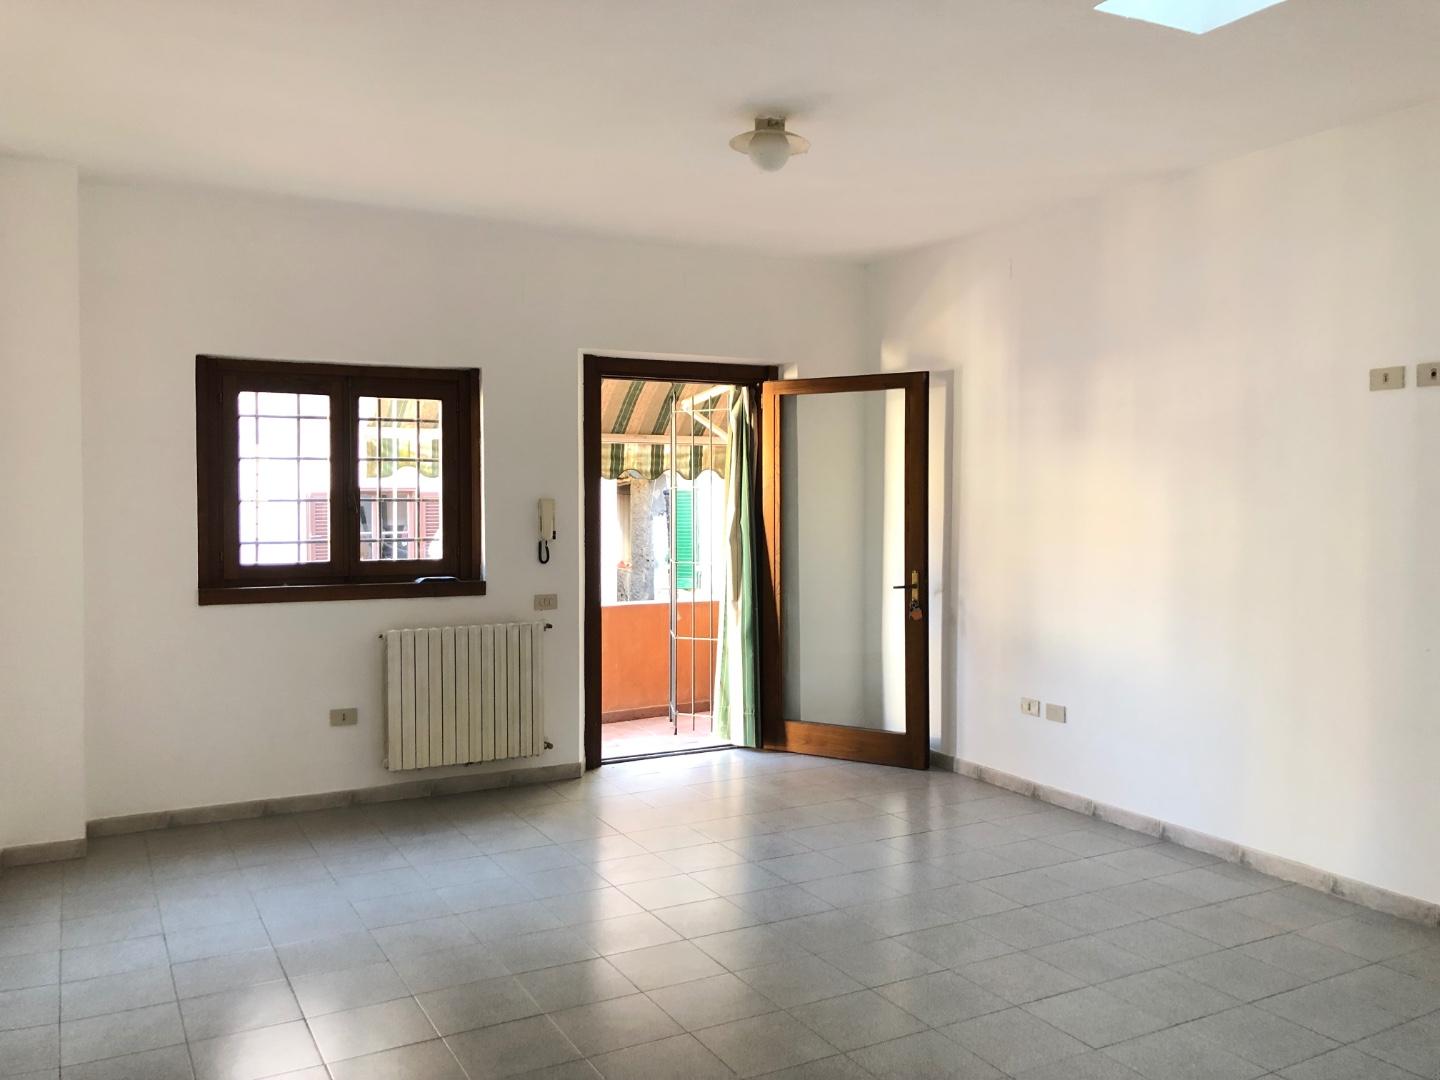 Appartamento in vendita a Castelfranco di Sotto, 4 locali, prezzo € 99.000 | PortaleAgenzieImmobiliari.it